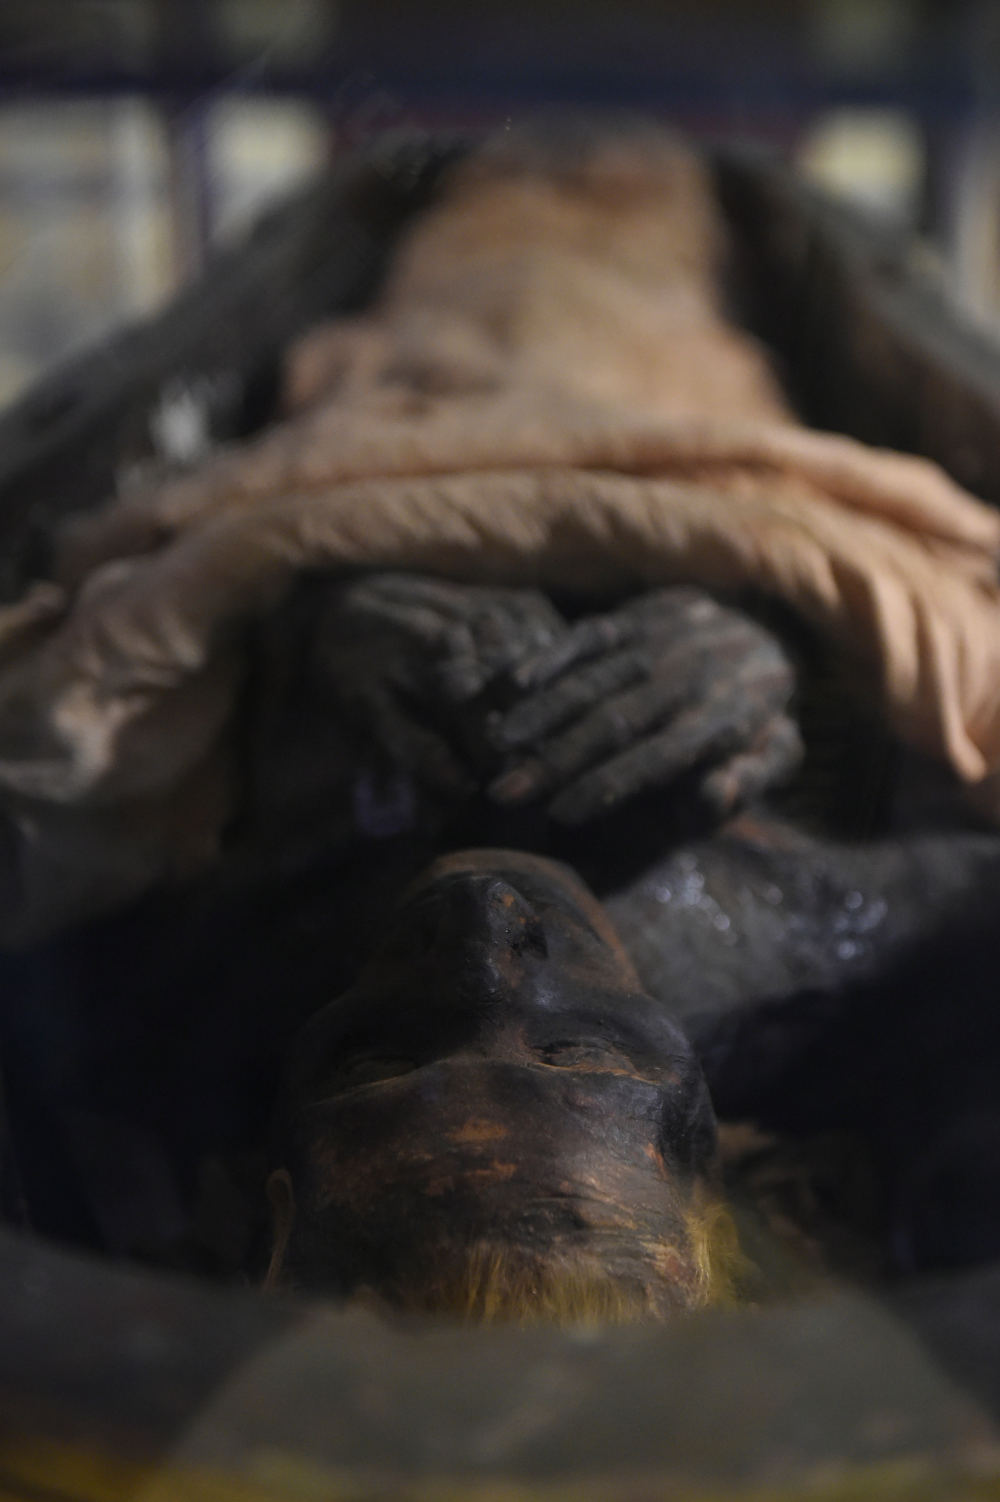  มัมมี่ของยูยาที่จัดแสดงภายในพิพิธภัณฑ์อียิปต์ระหว่างการฉลอง 116 ปีของพิพิธภัณฑ์ (Khaled DESOUKI / AFP) 